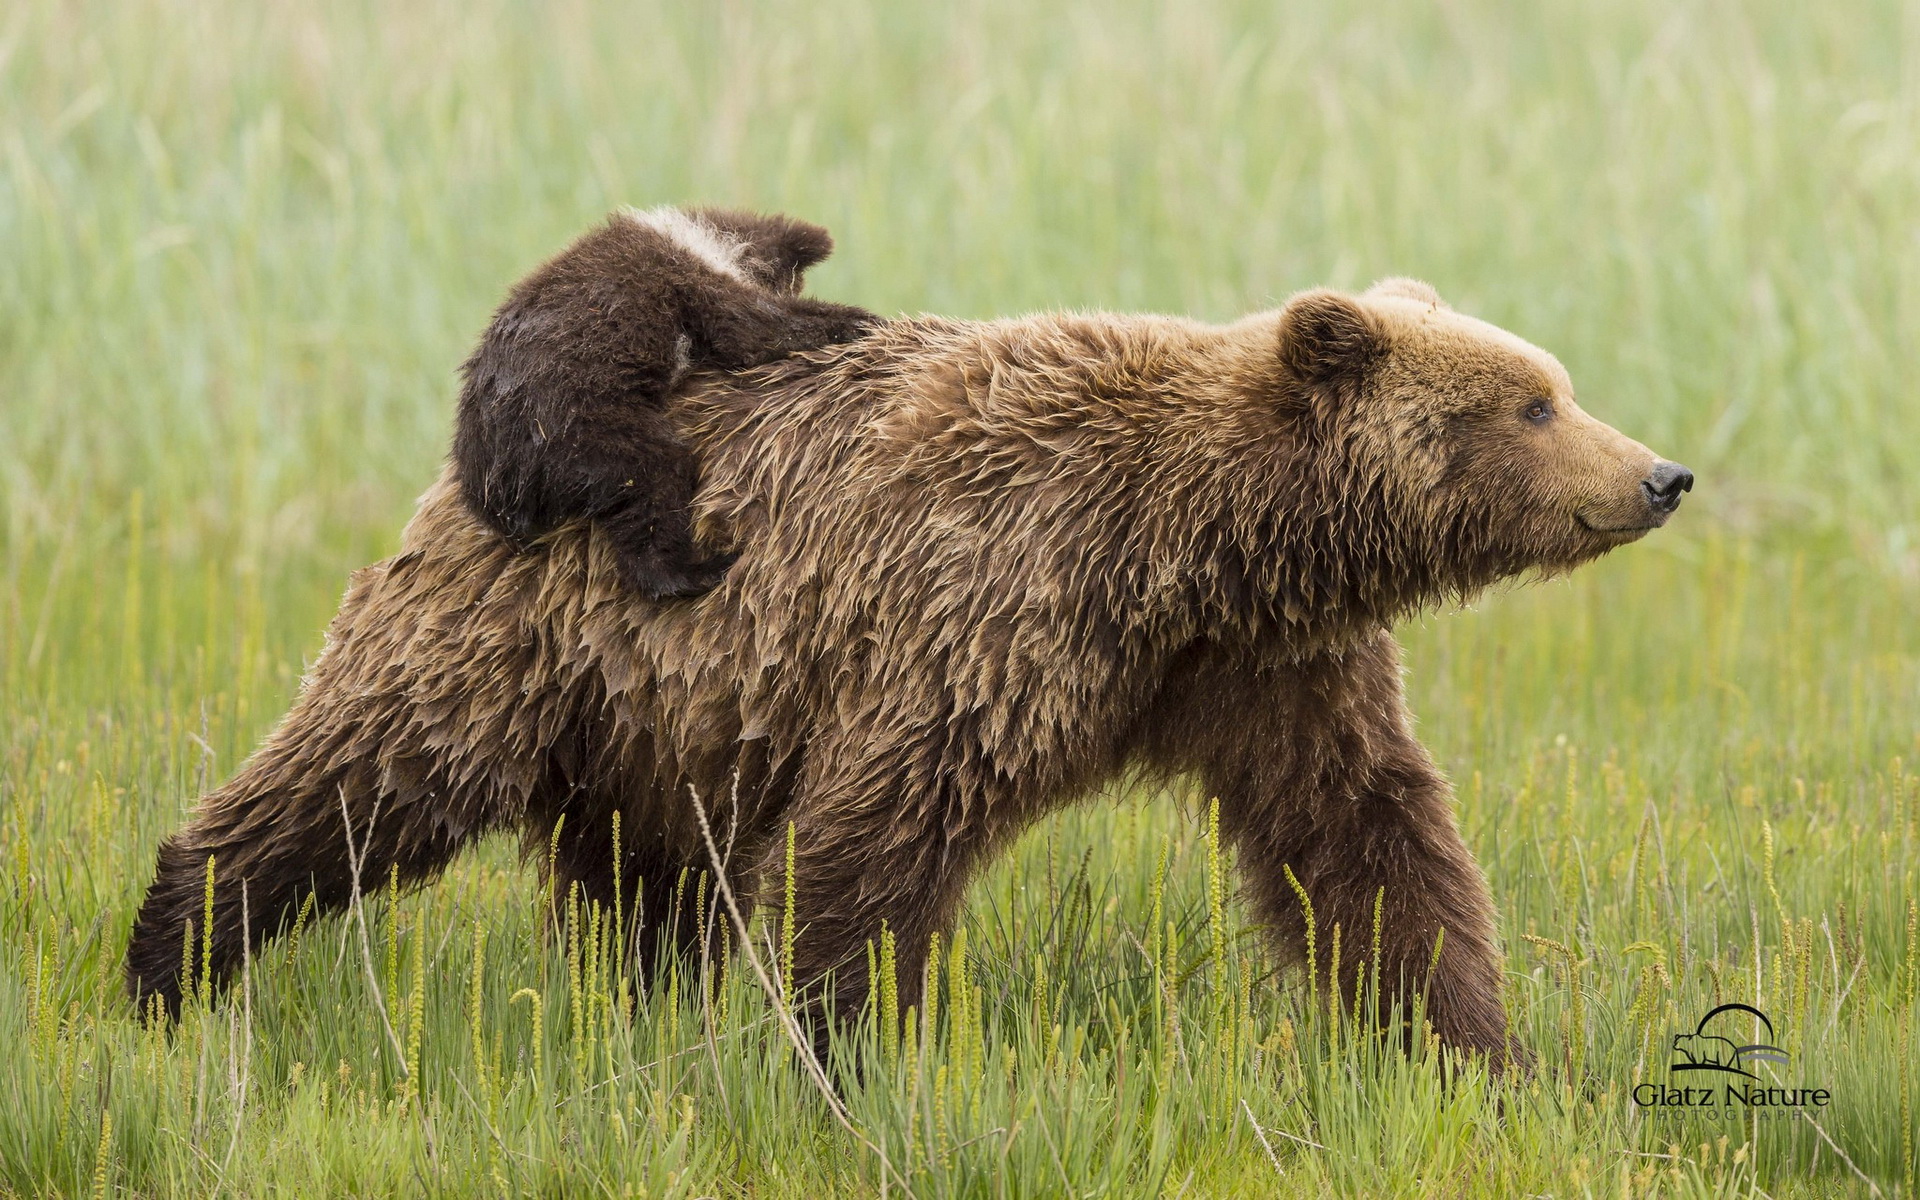 Скачать обои бесплатно Медведи, Медведь, Животные картинка на рабочий стол ПК